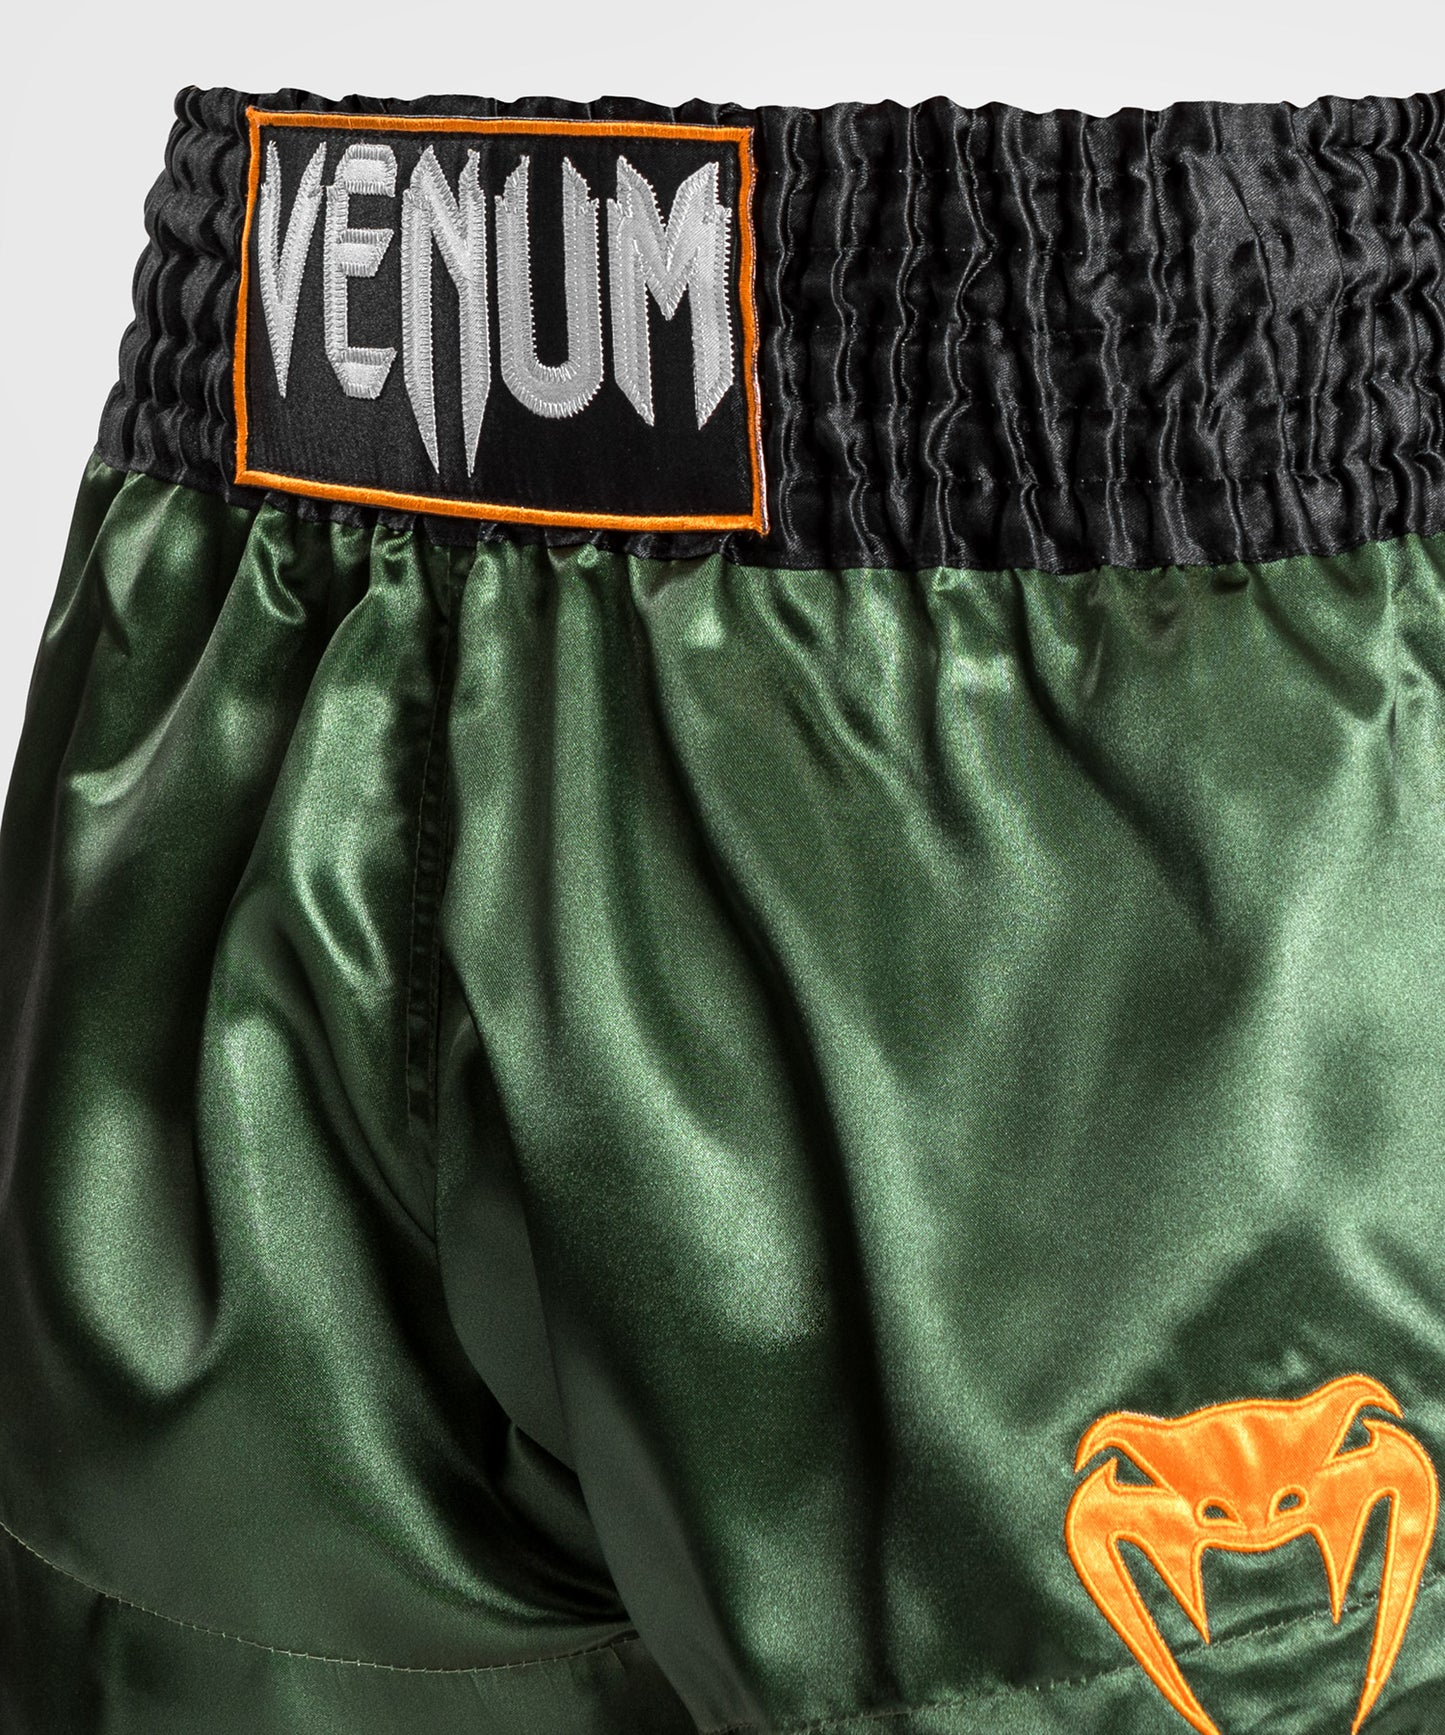 Venum Classic Muay Thai broekje - Groen/Goud/Zwart